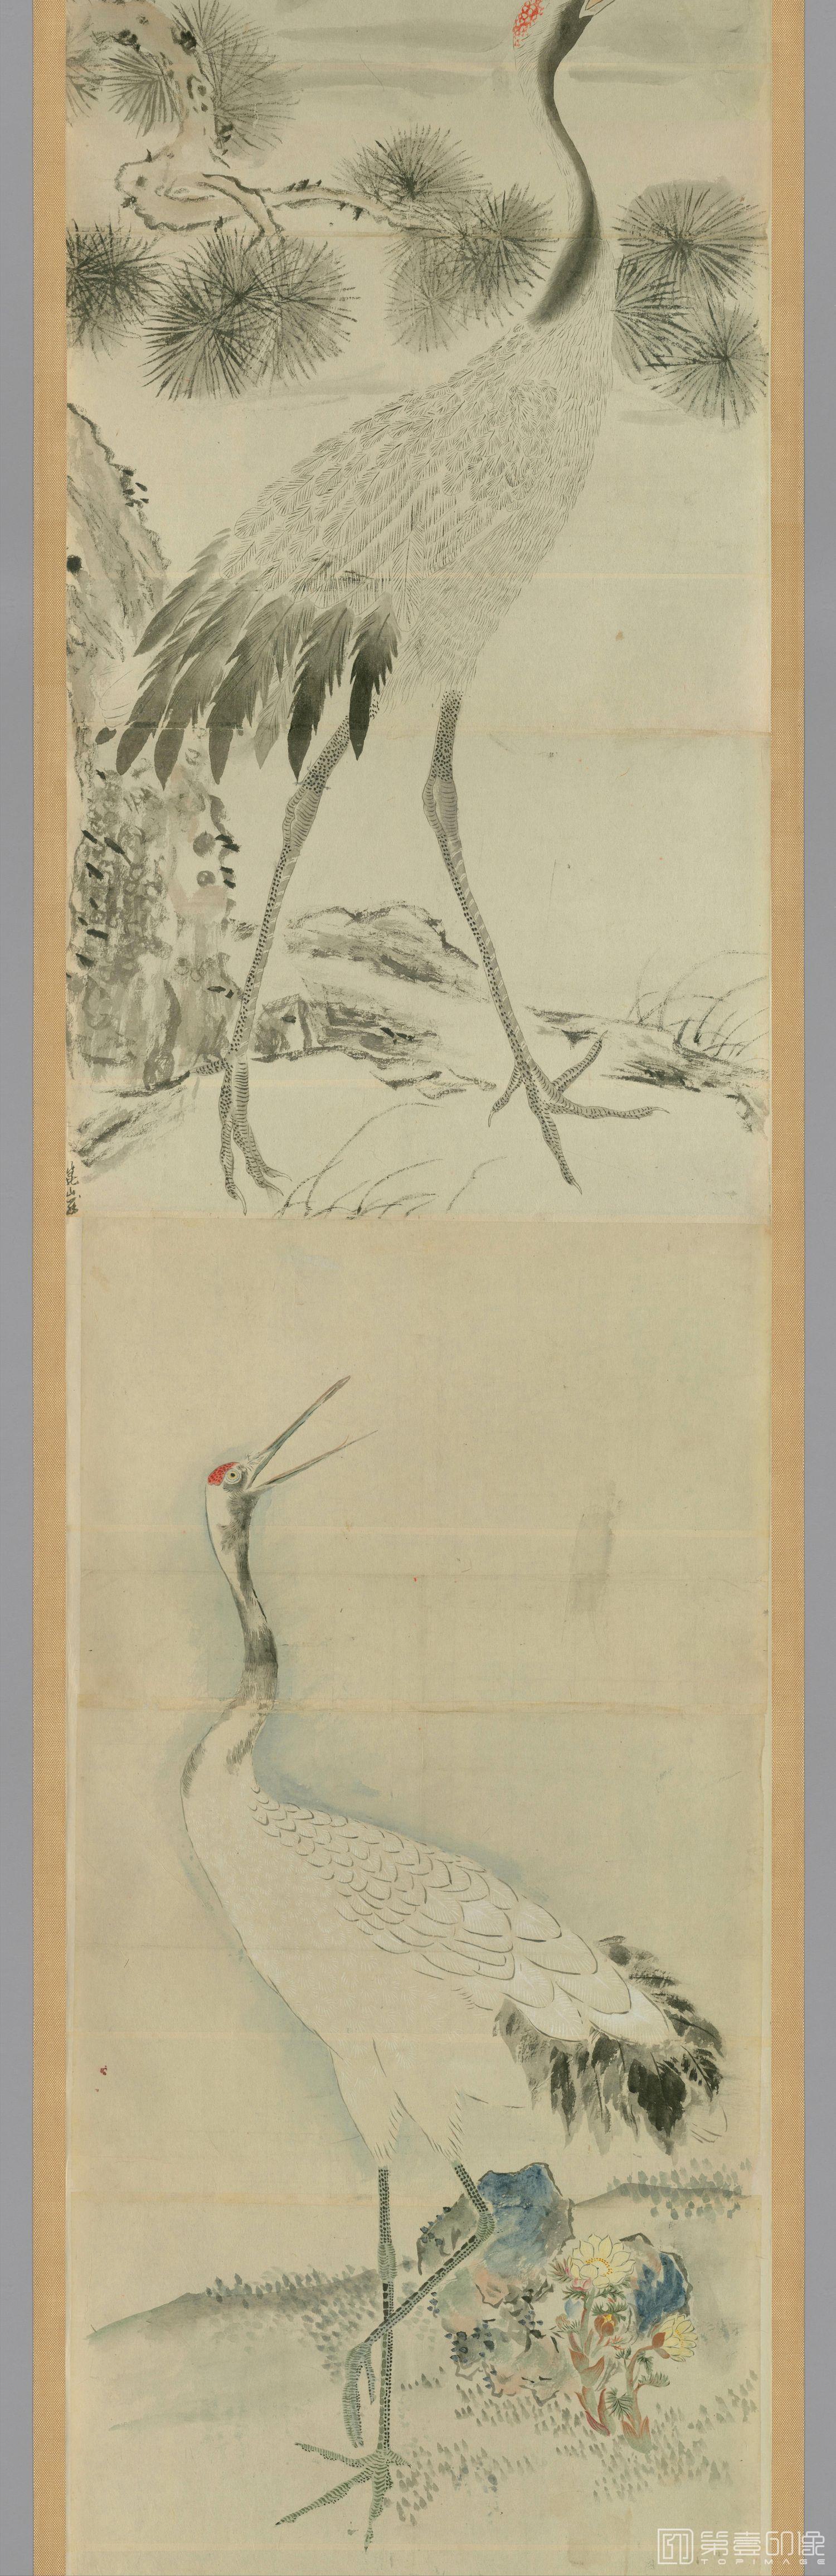 日本-明清古画动物山水粉本图卷纸本-38x1510cm-分段-06-水彩画作品-第